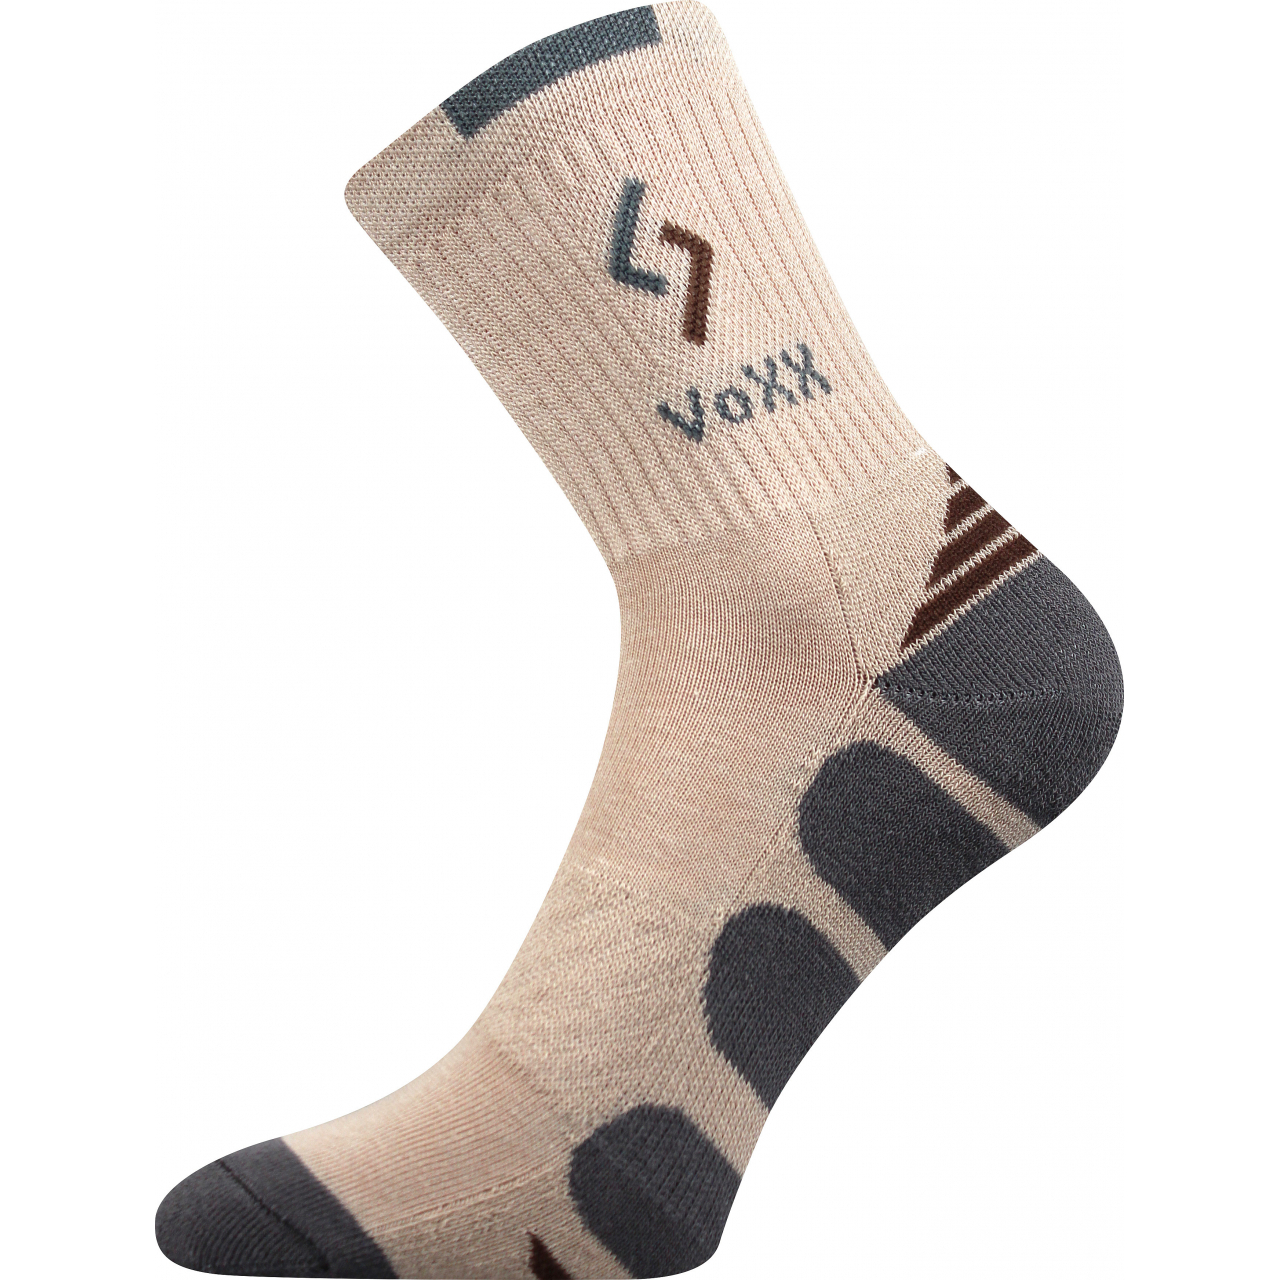 Ponožky sportovní Voxx Tronic - béžové-šedé, 35-38